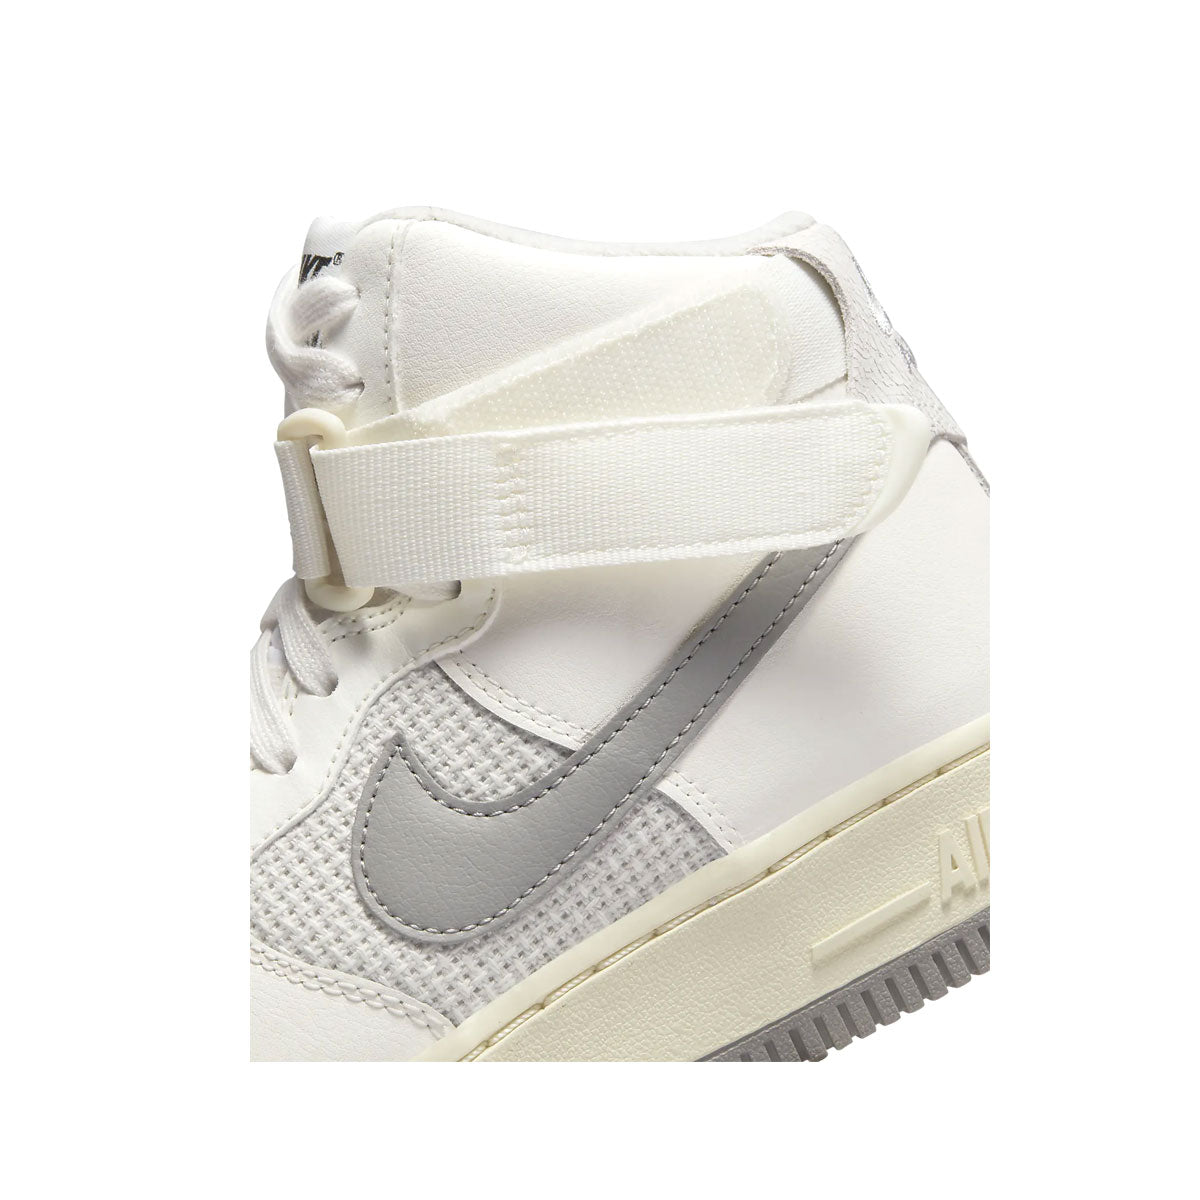 Nike Air Force 1 High (GS) LE Big Kid's Shoes Sail Grey